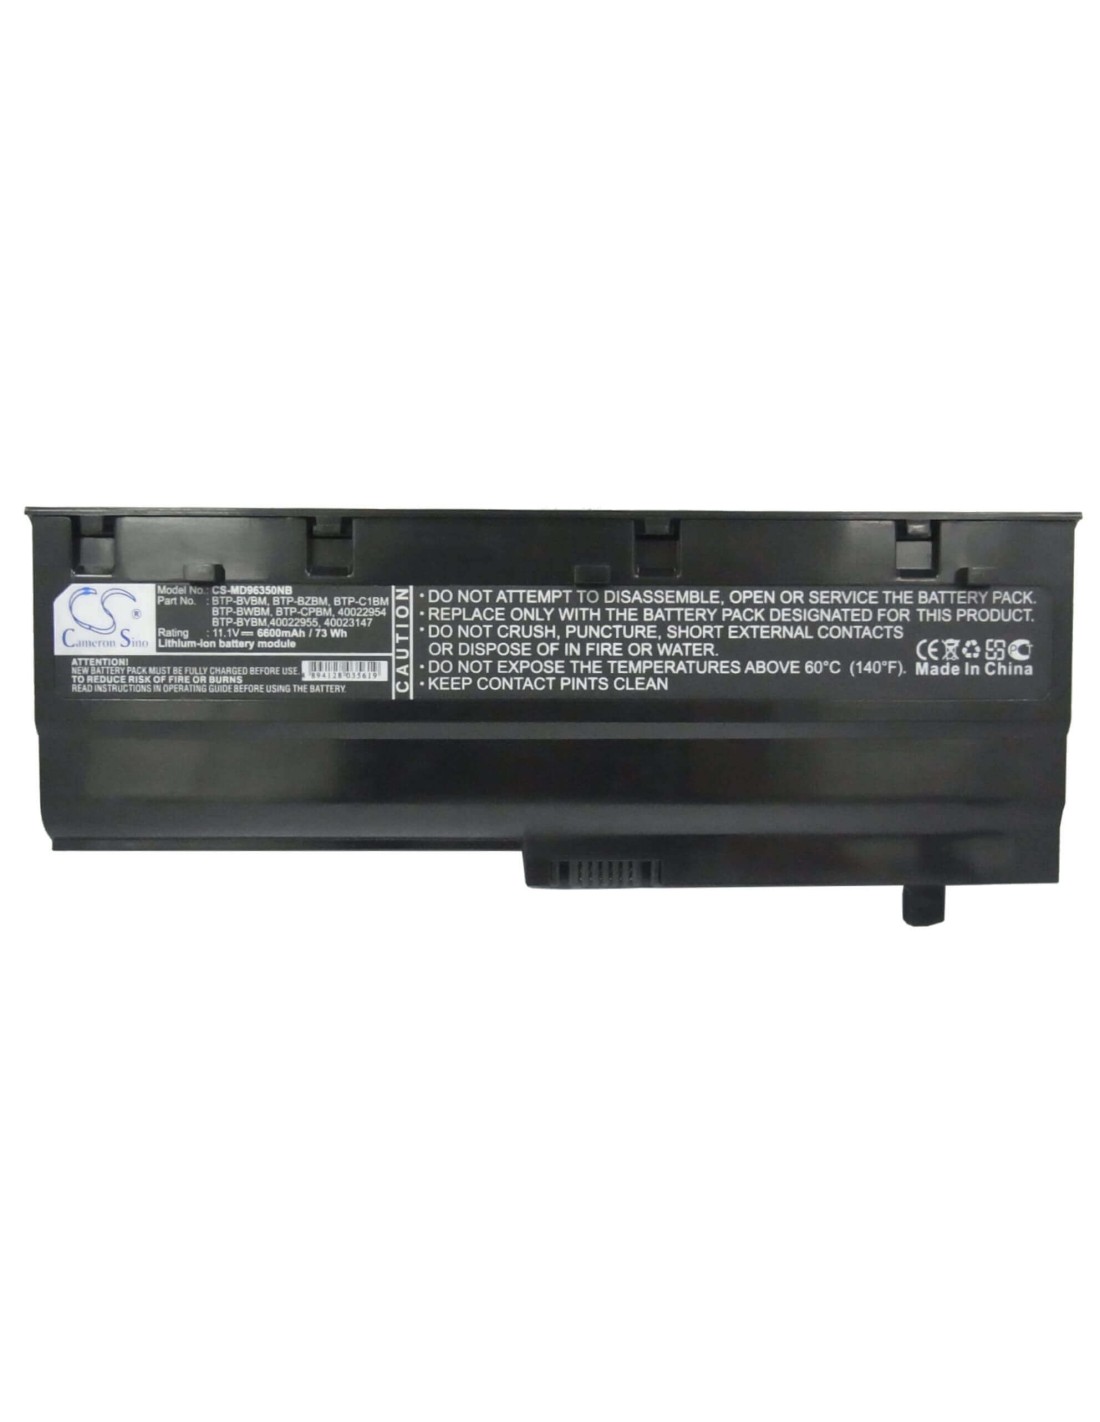 Black Battery for Medion Md96350, Md96370, Wim2140 11.1V, 6600mAh - 73.26Wh